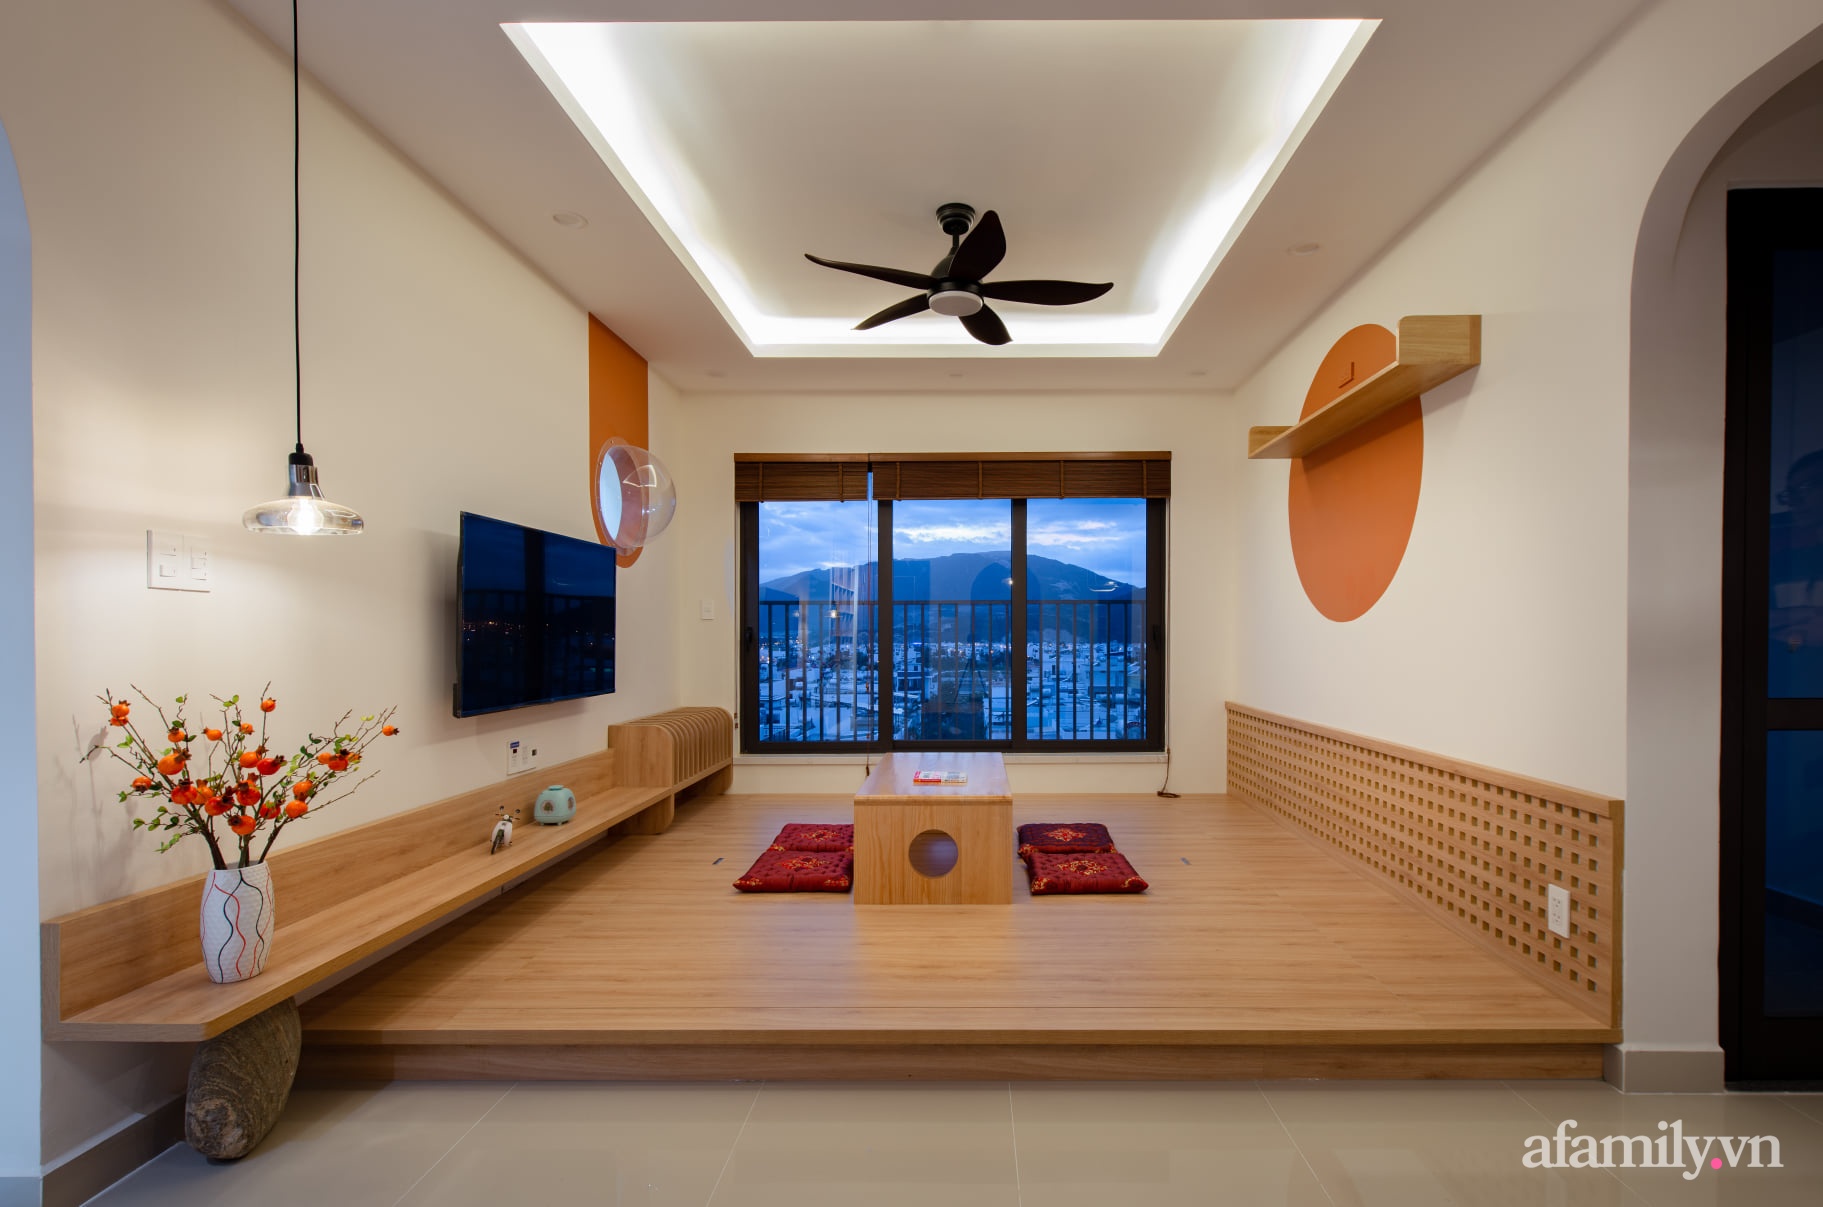 Căn hộ 78m² với tông cam đất ngọt ngào cùng đường cong mềm mại mang hơi hướng phong cách Nhật ở Nha Trang - Ảnh 6.